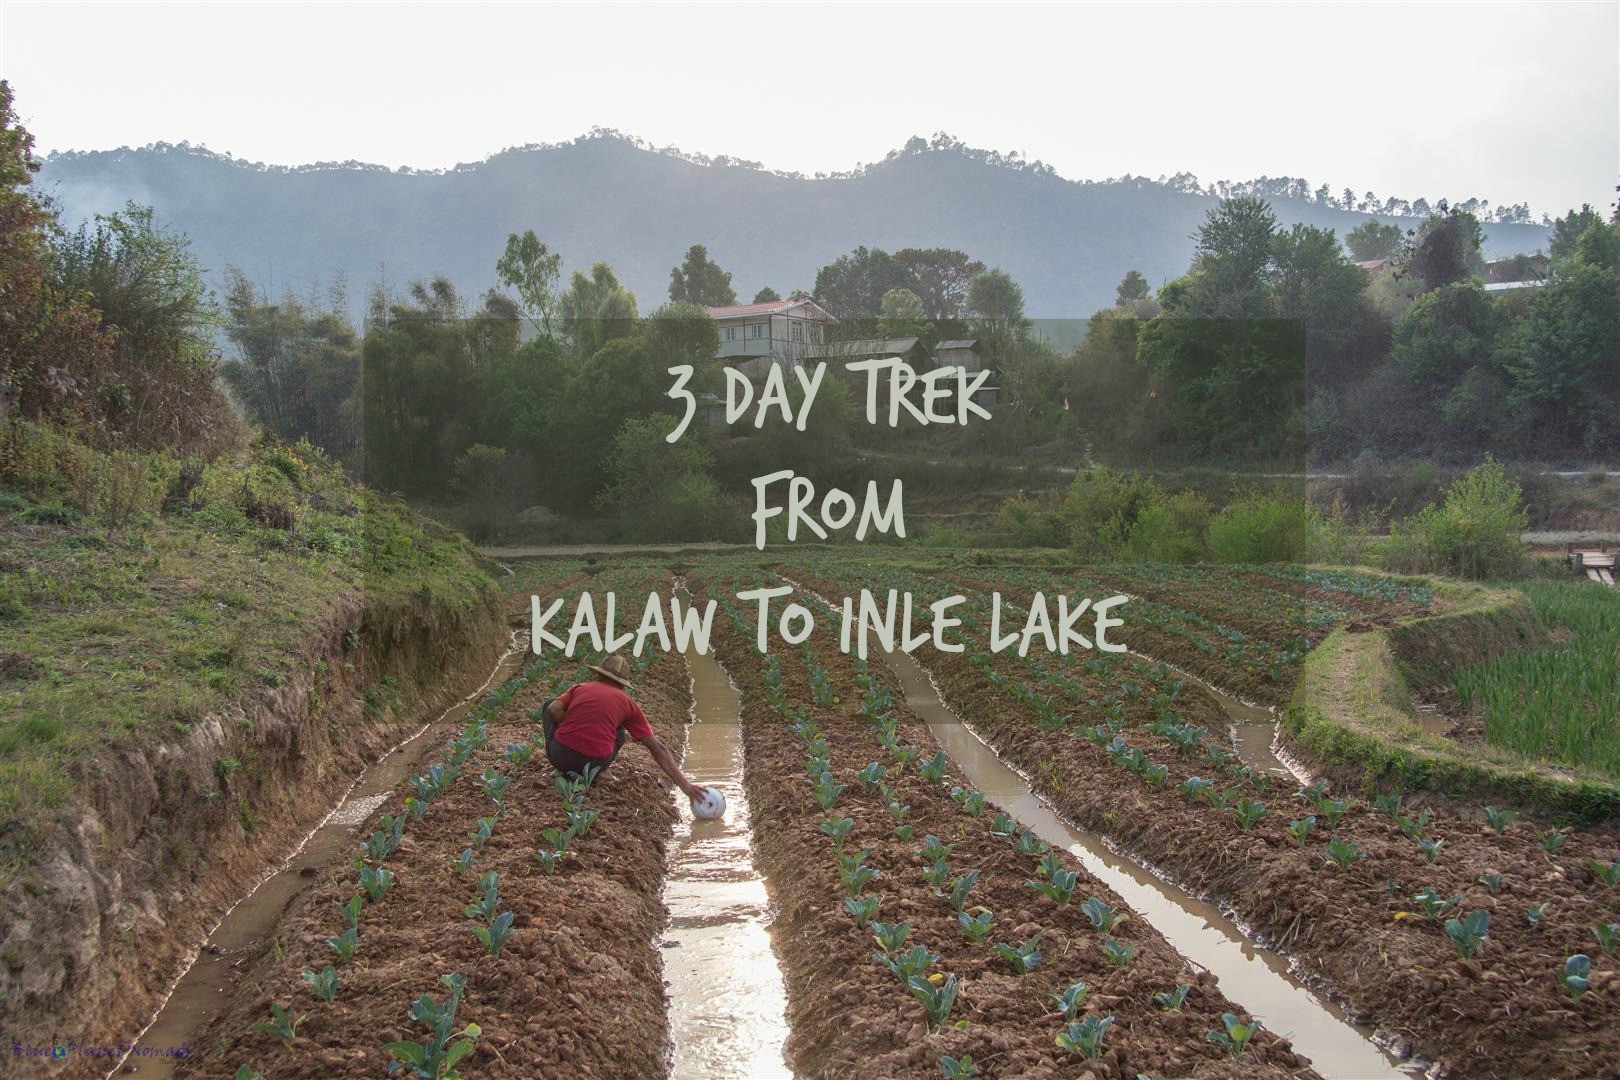 3 Day Trek from Kalaw to Inle Lake